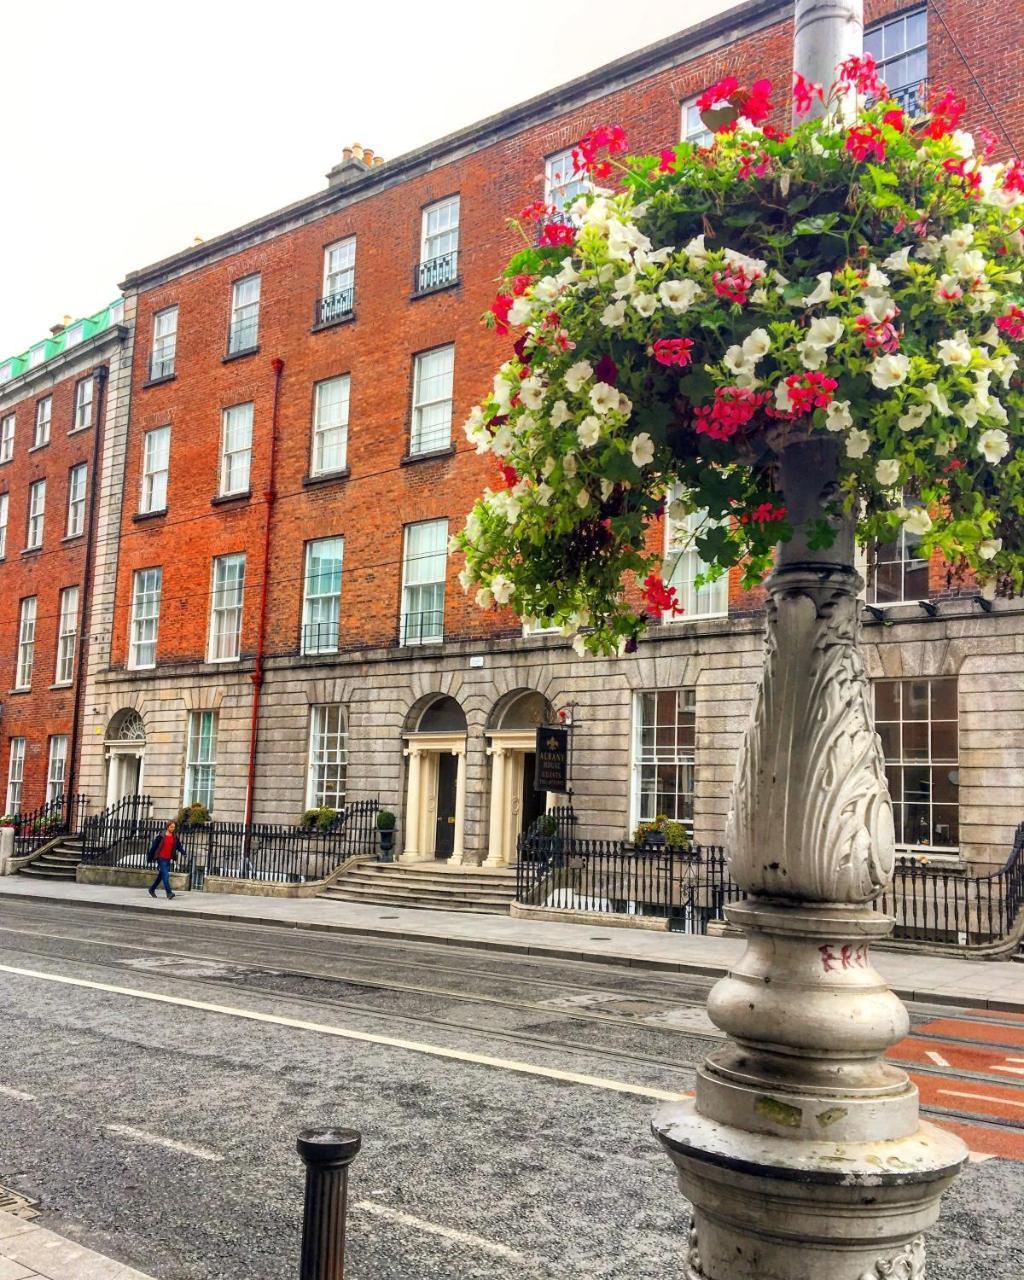 Albany House Hotel Dublin Luaran gambar